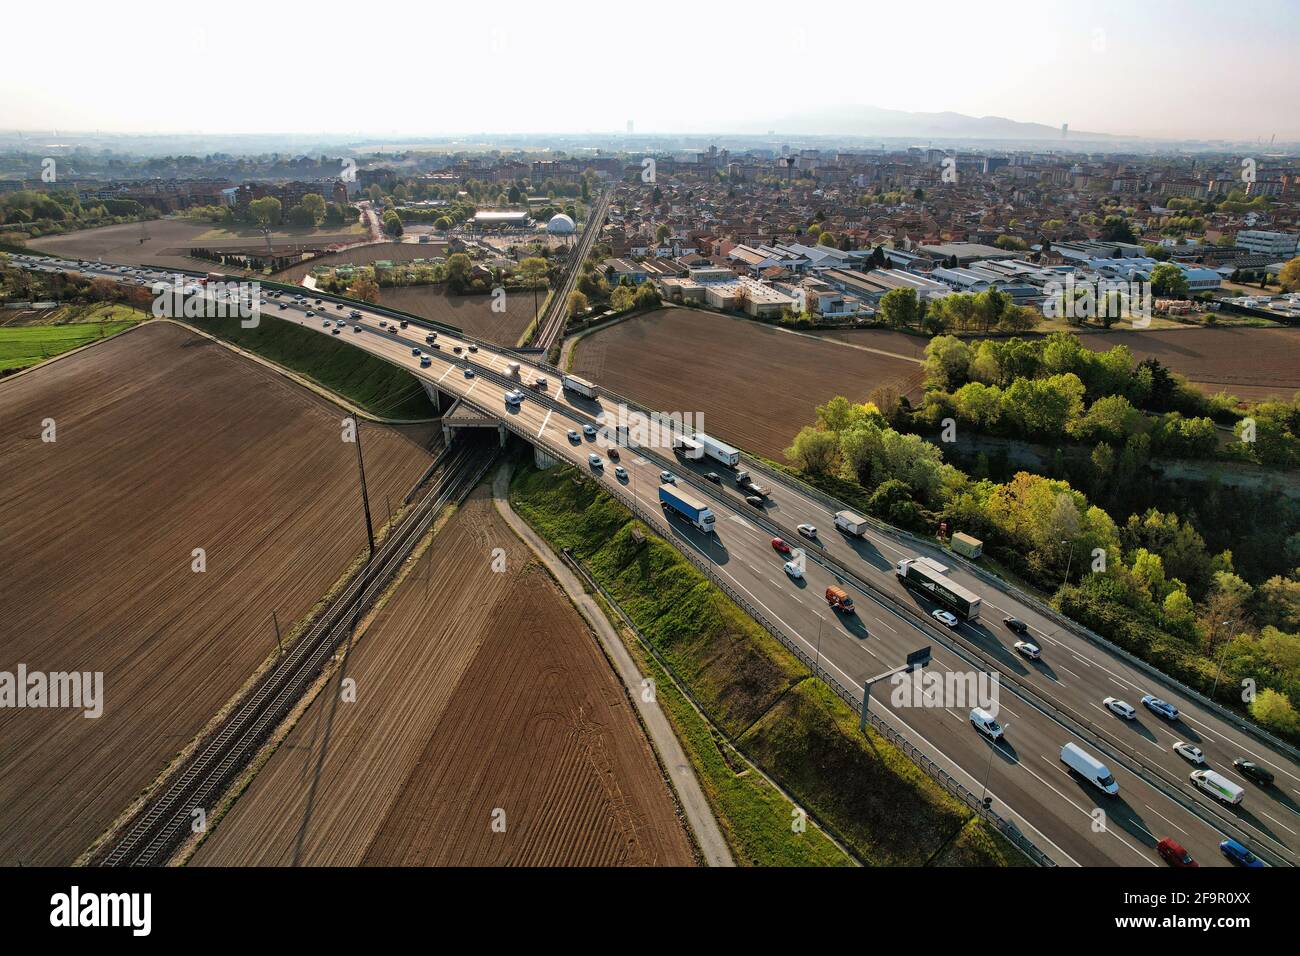 Autobahn mit fließendem Verkehr von oben gesehen. Turin, Italien - April 2021 Stockfoto